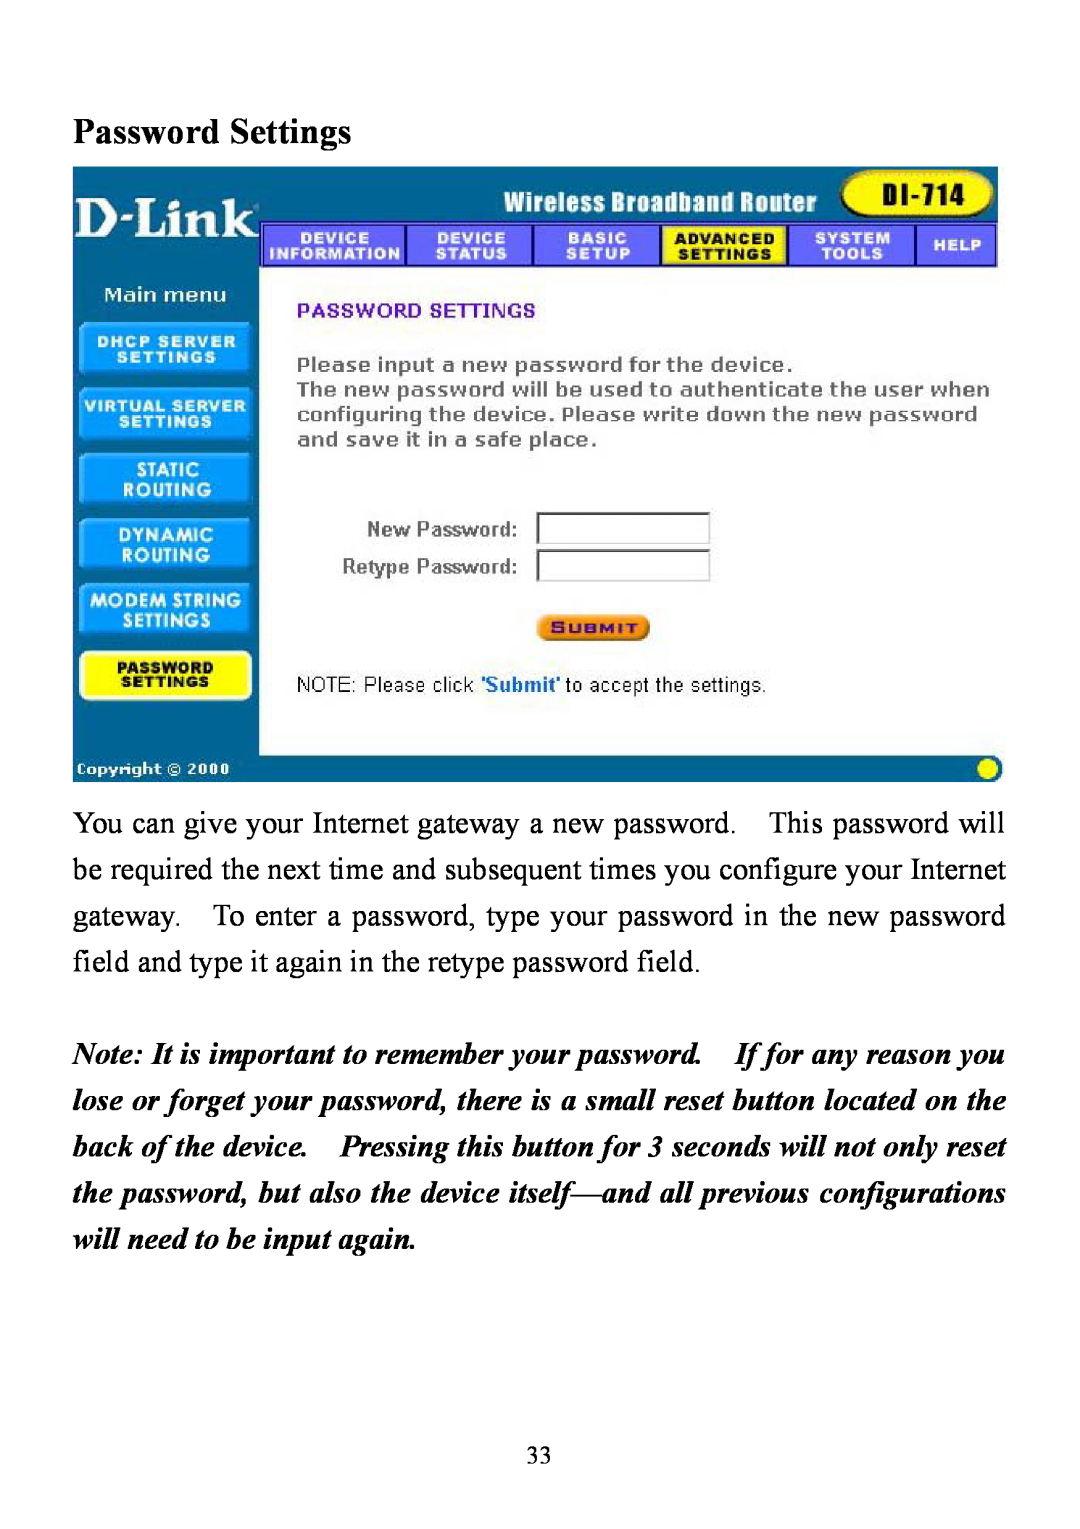 D-Link DI-714 user manual Password Settings 